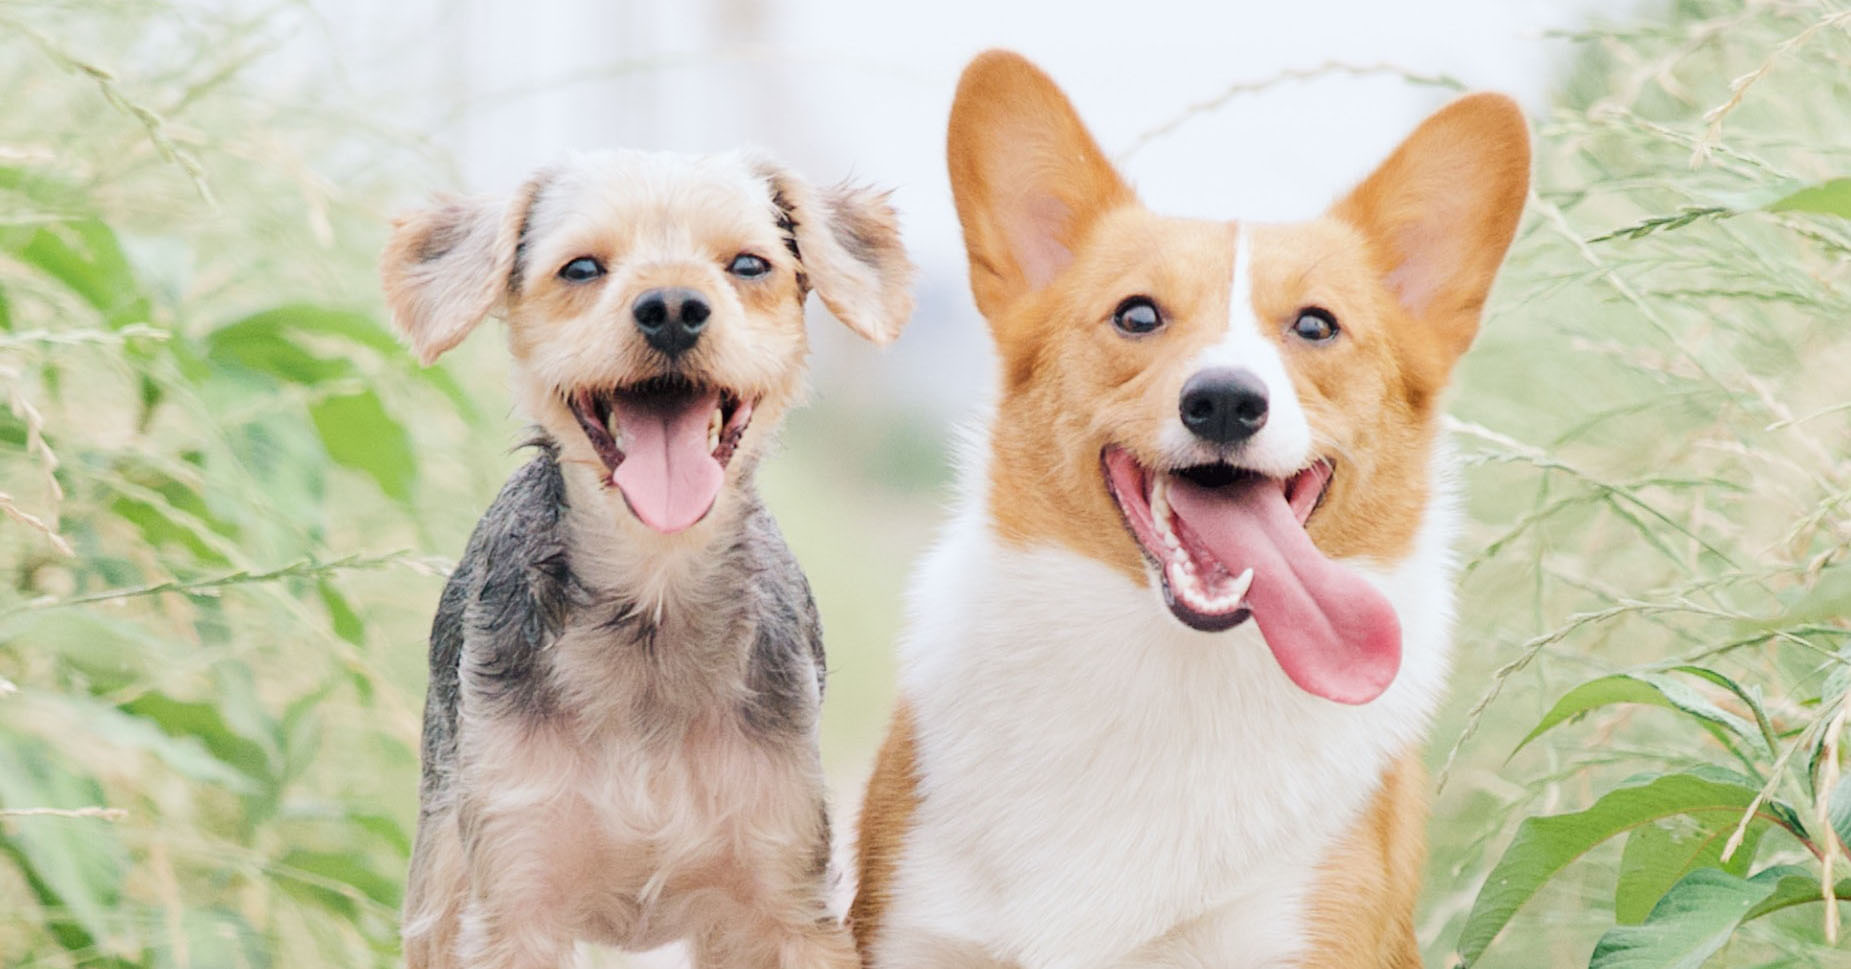 Az idősebb kutyák kevésbé barátságosak, a barátságos kutyák pedig alacsonyabb rangúak